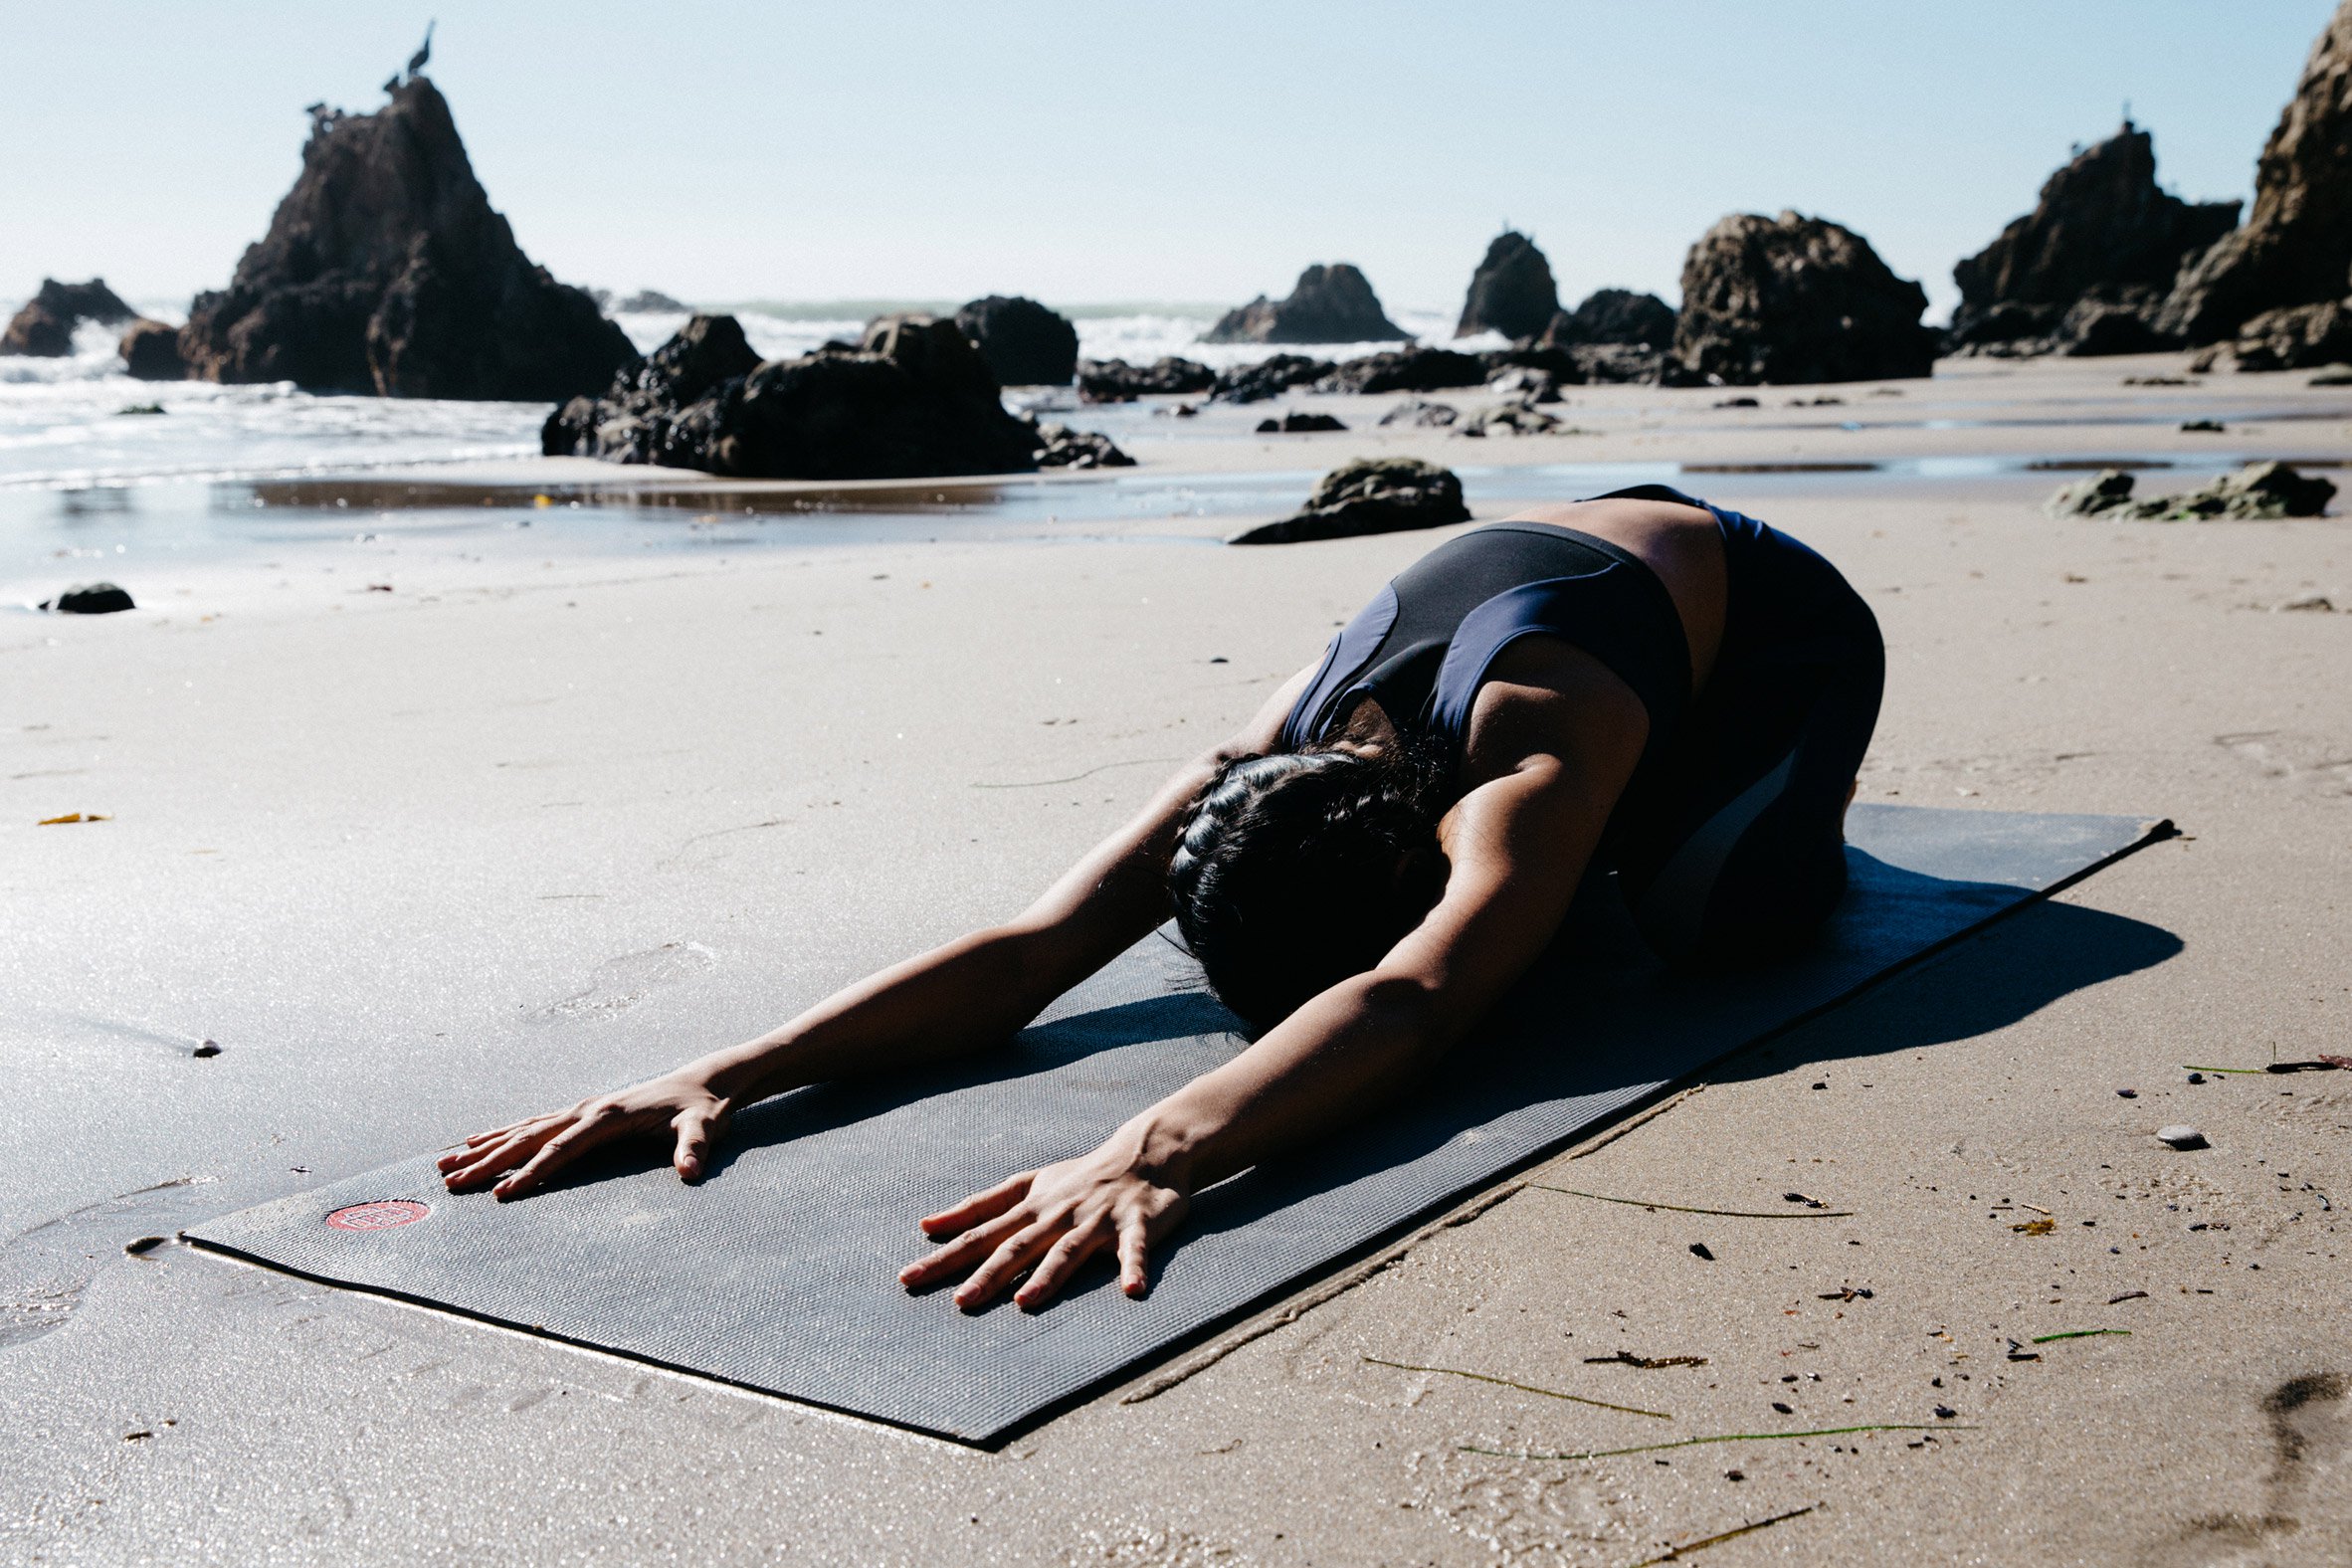 Colanţi inteligenţi care corectează poziţiile imperfecte de yoga